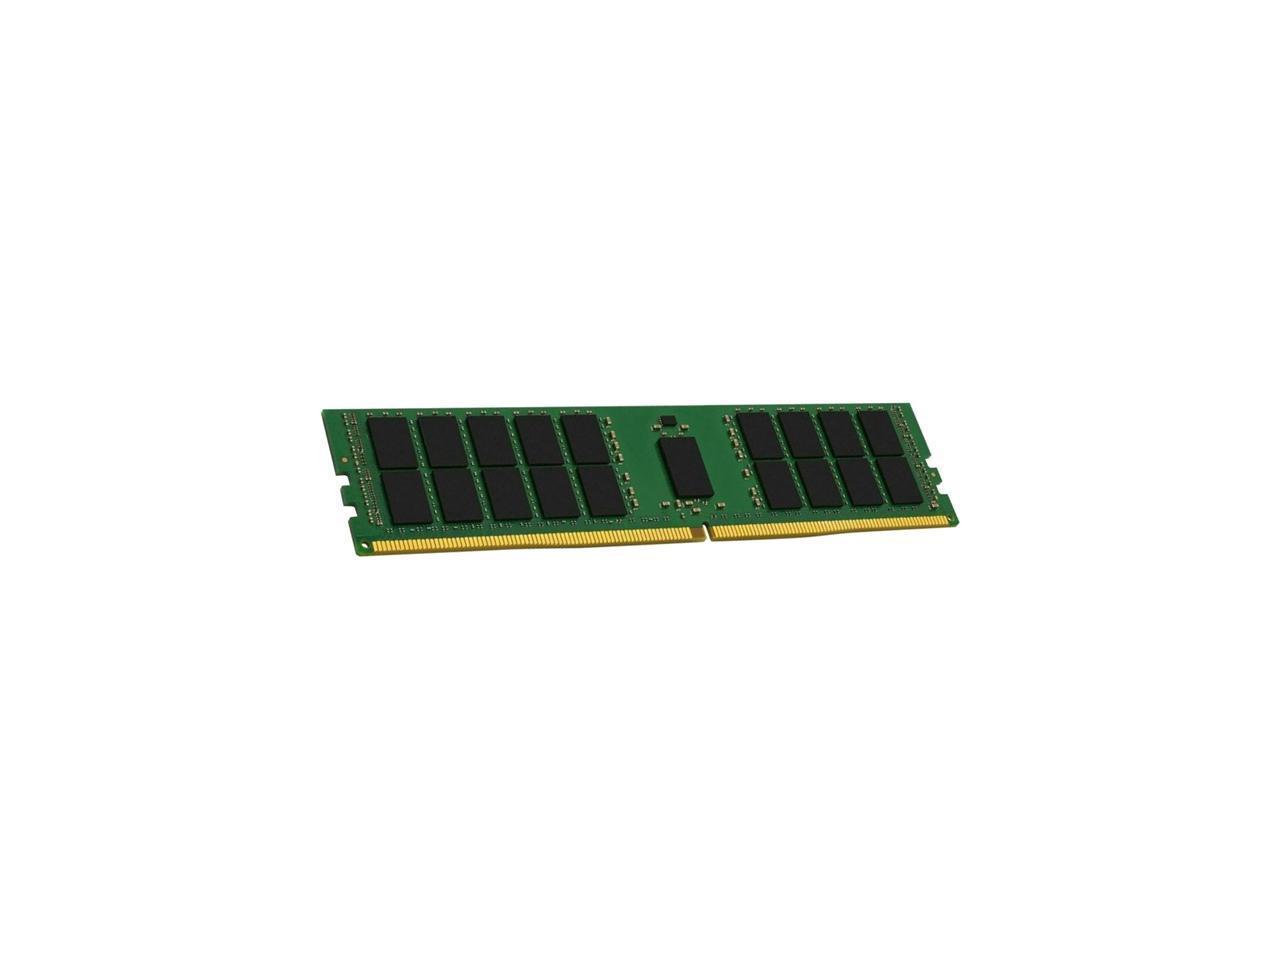 Kingston KSM32RS4/16HDR 16GB DDR4 3200 1Rx4 2G x 72-Bit CL22 REG 1.2V 288-Pin DIMM Memory Module